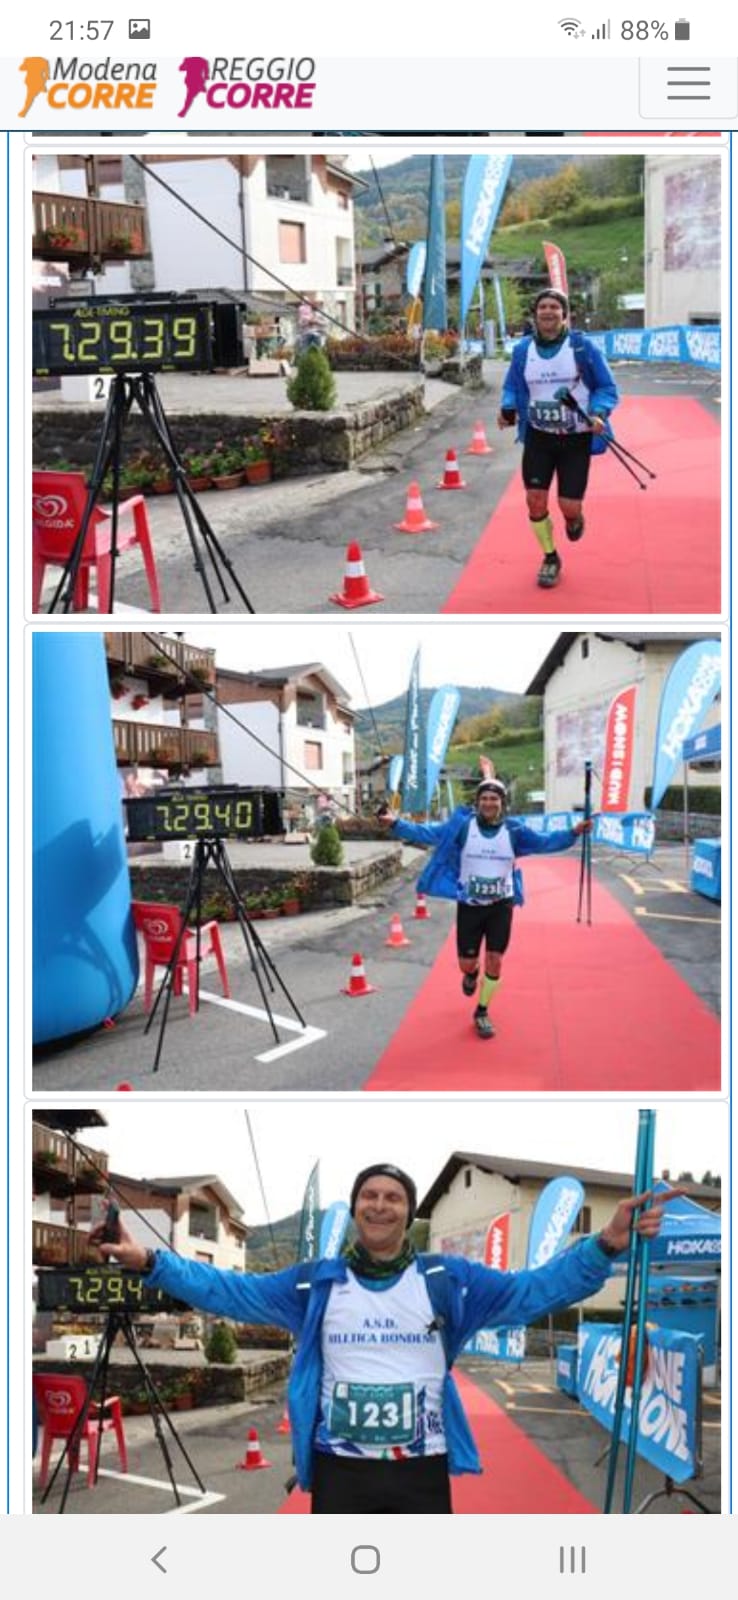 lago santo mountain race 2019 2